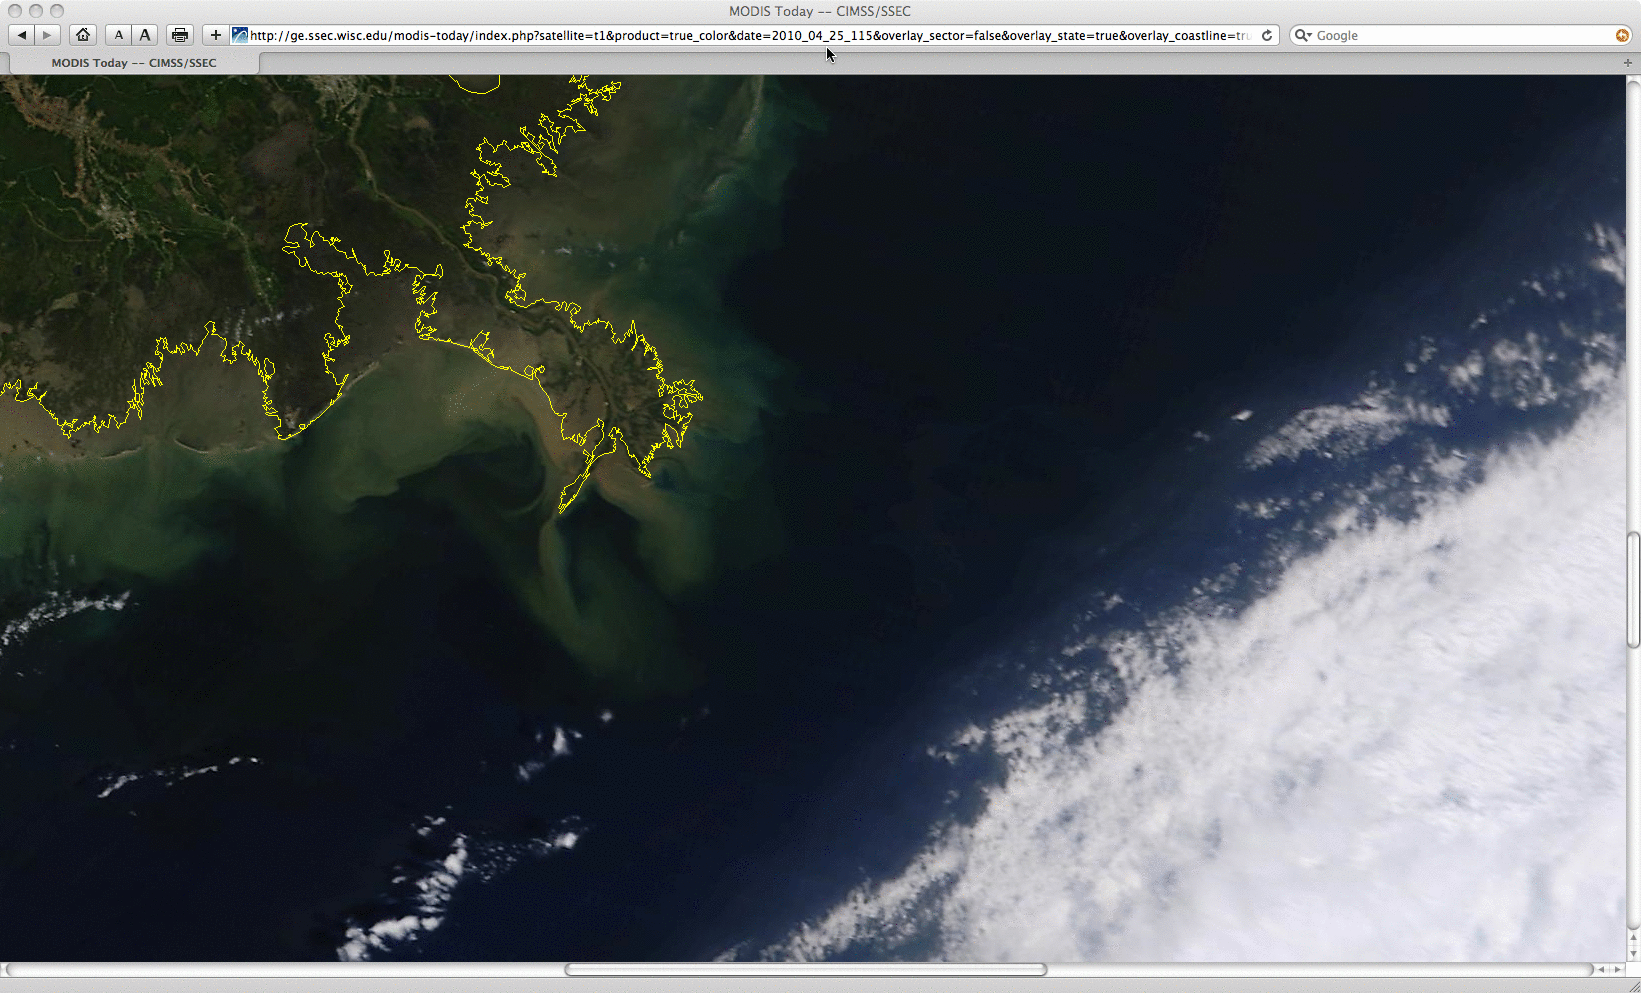 17:21 UTC Terra and 18:56 UTC Aqua MODIS true color mages on 25 April 2010